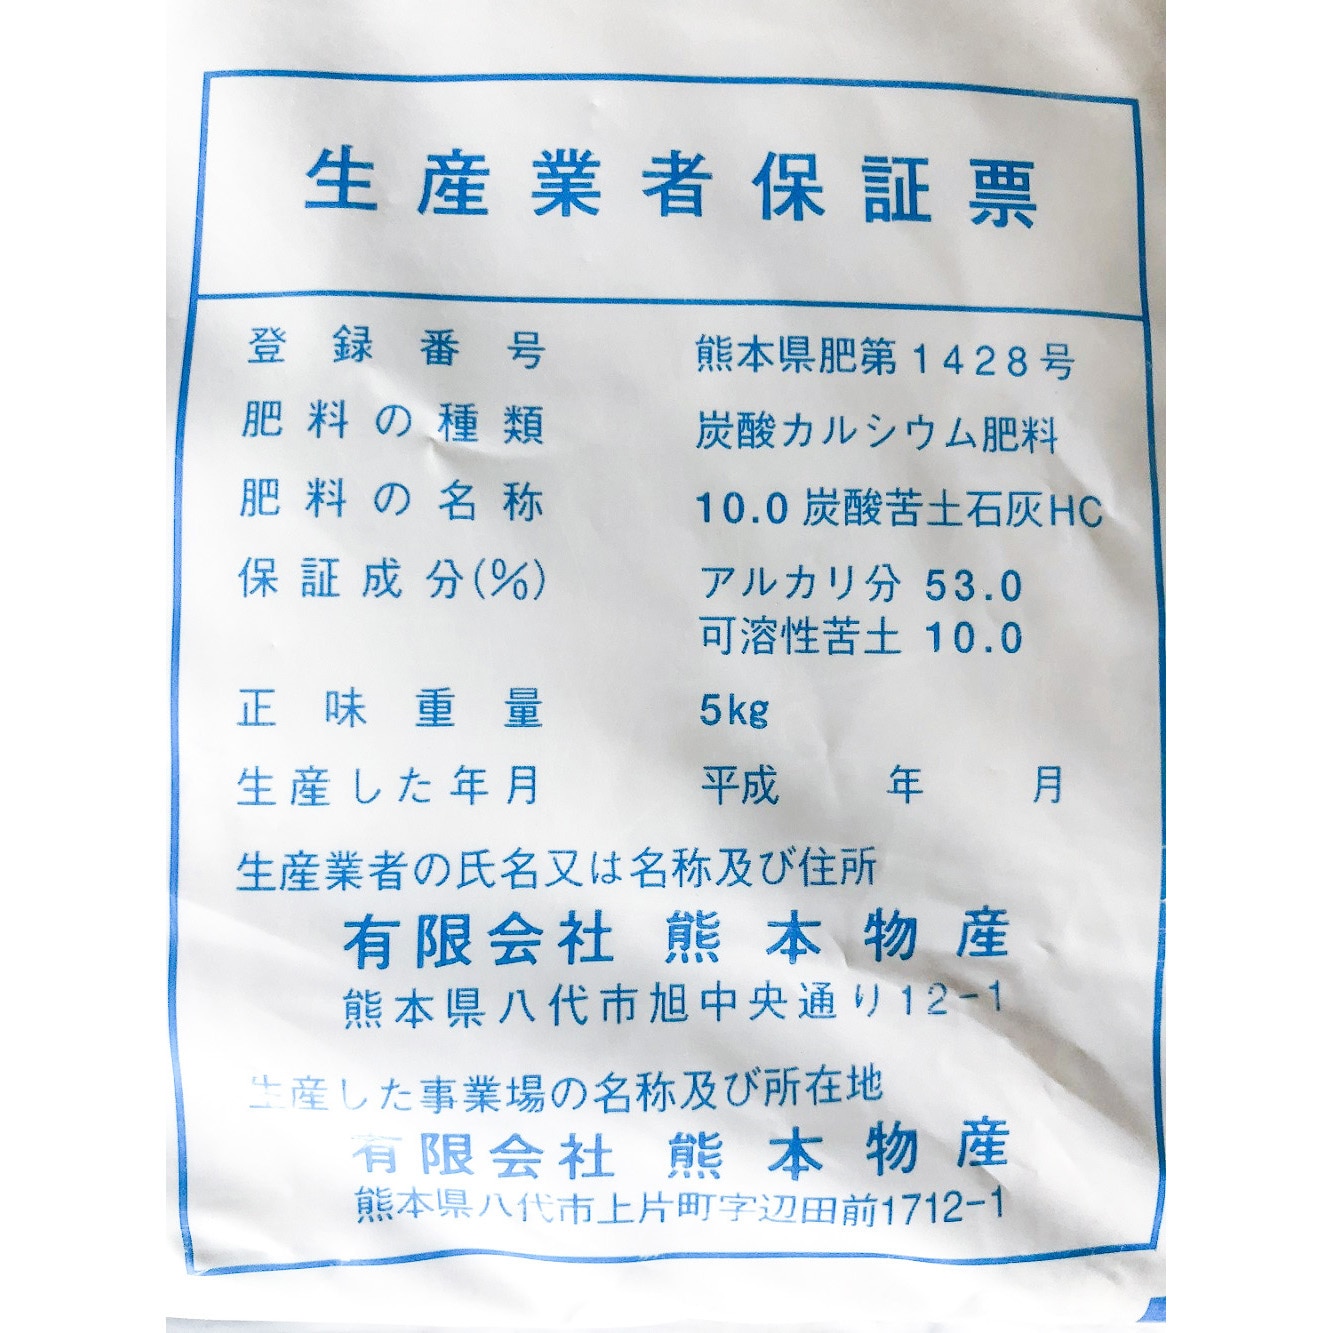 苦土石灰 1袋 5kg 熊本物産 通販サイトmonotaro